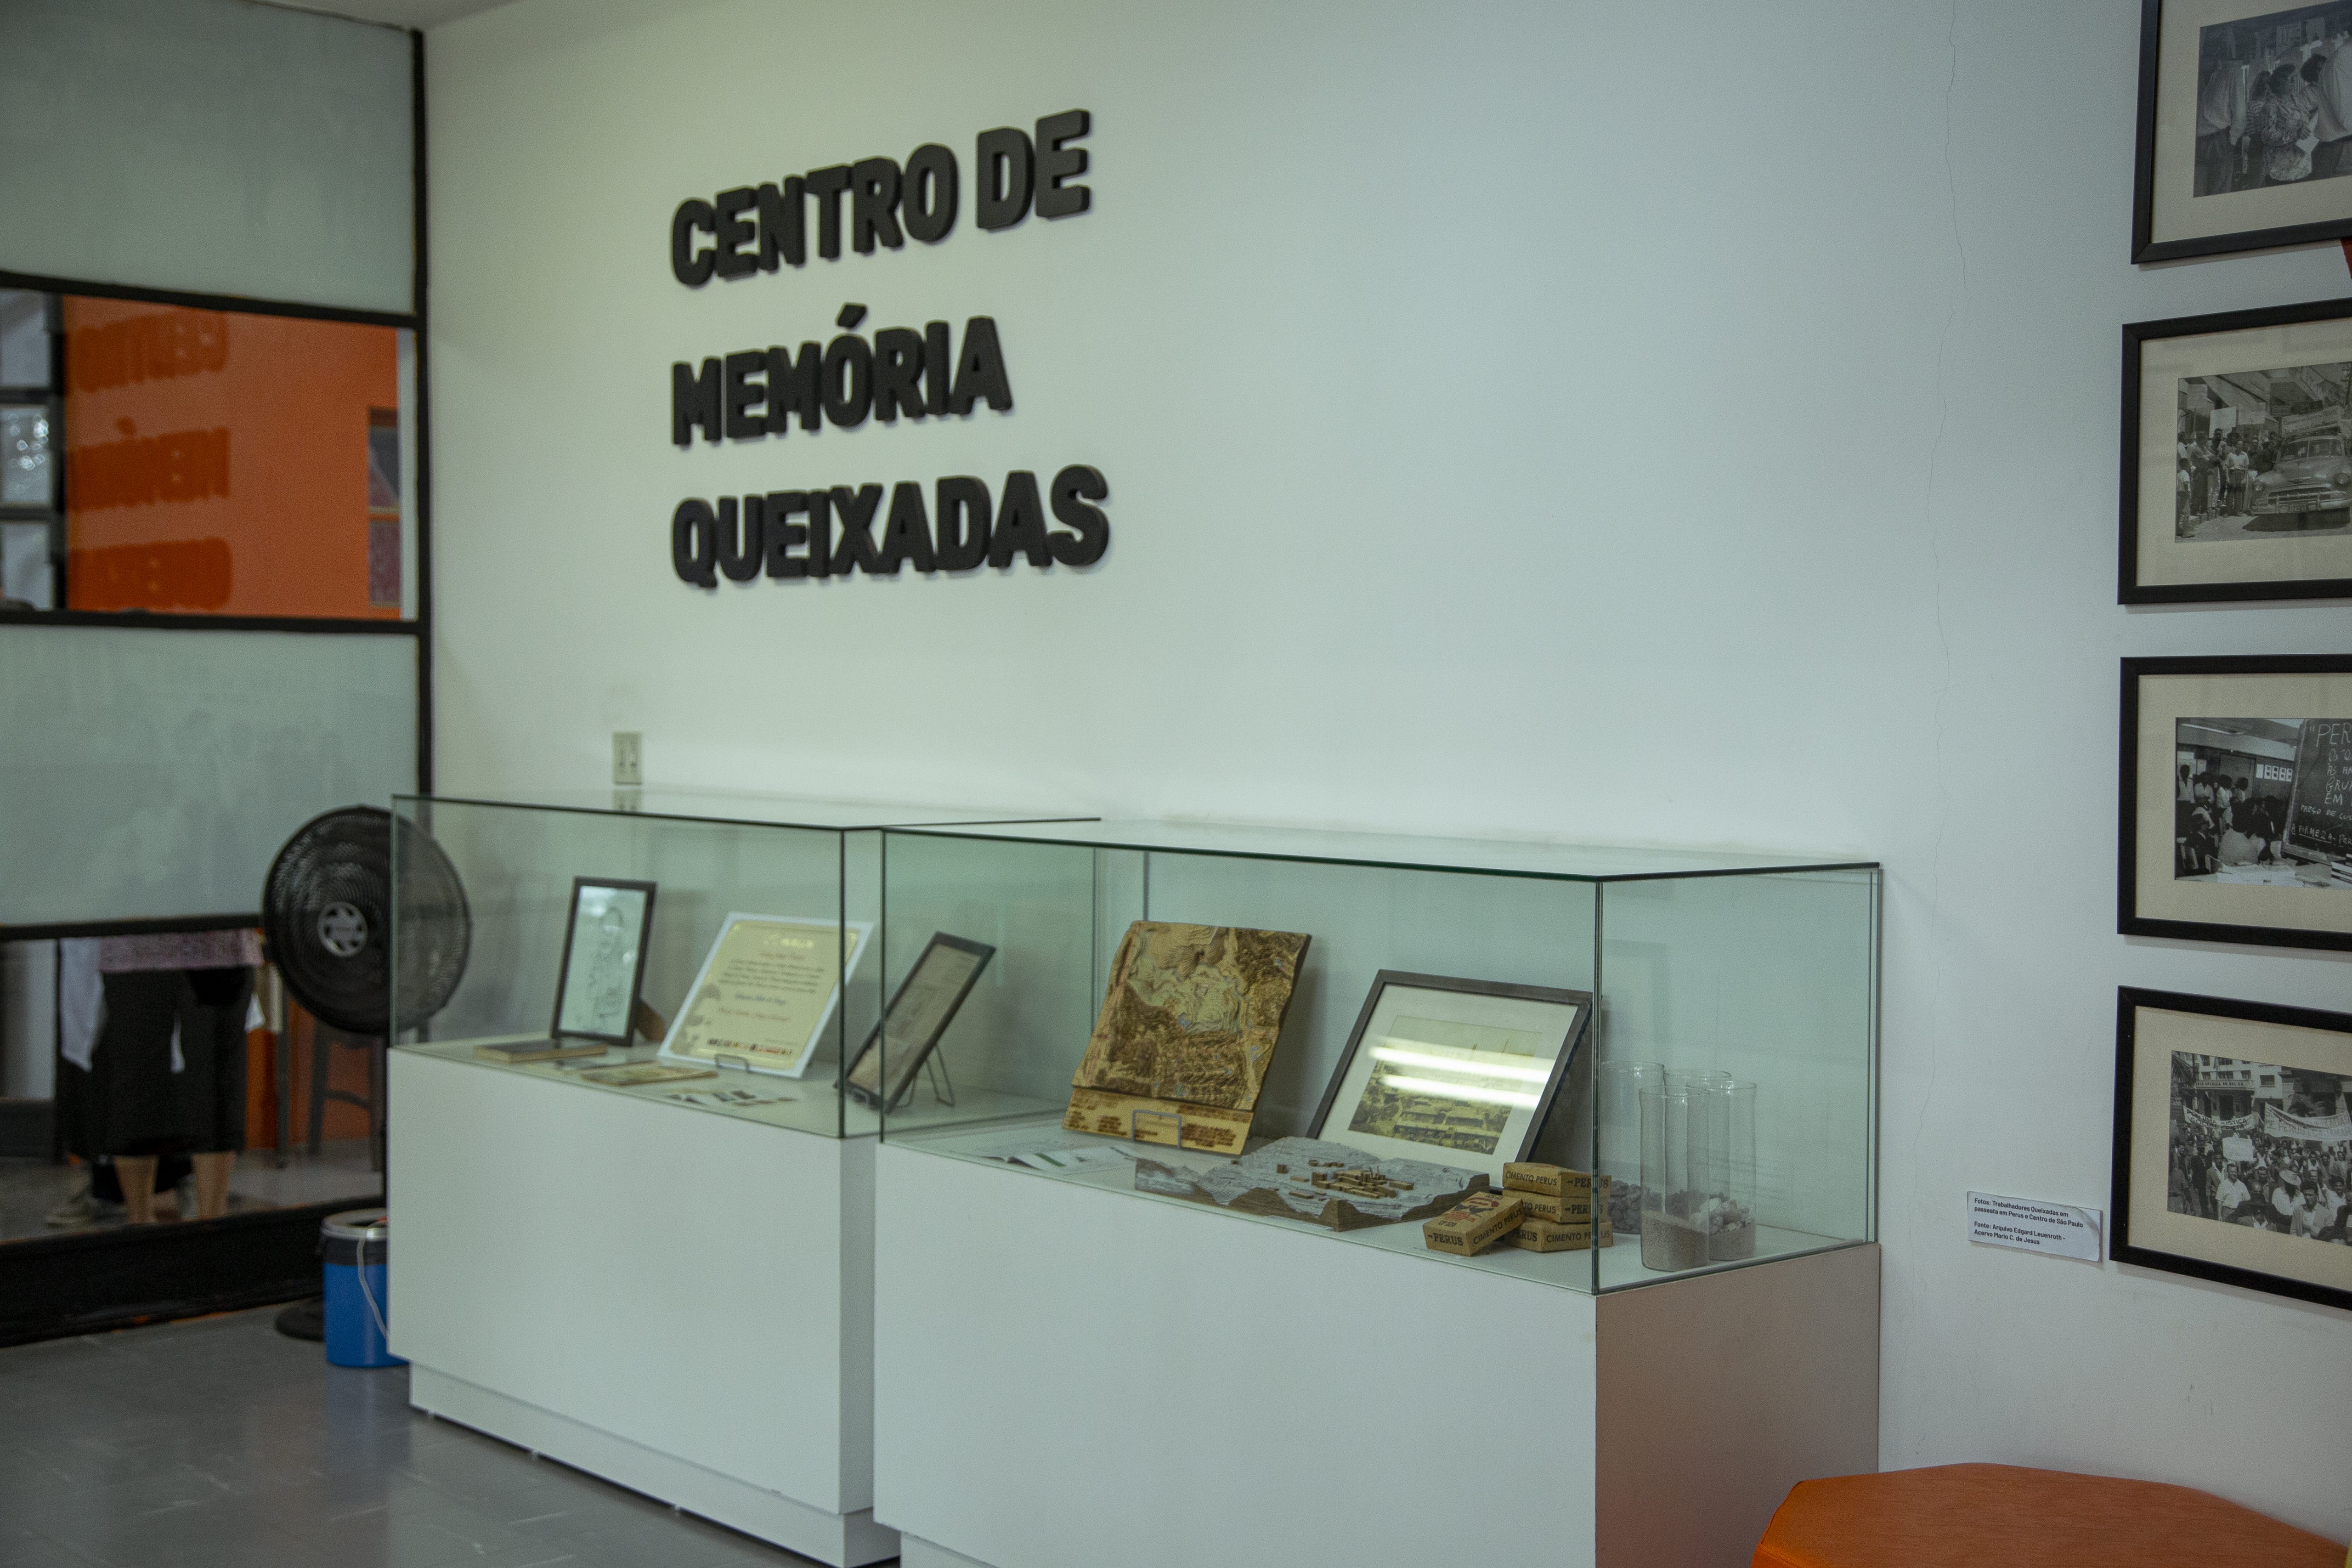 Entrada do Centro de Memória Queixadas, que fica dentro da Biblioteca Padre José de Anchieta, localizada na Vila Perus